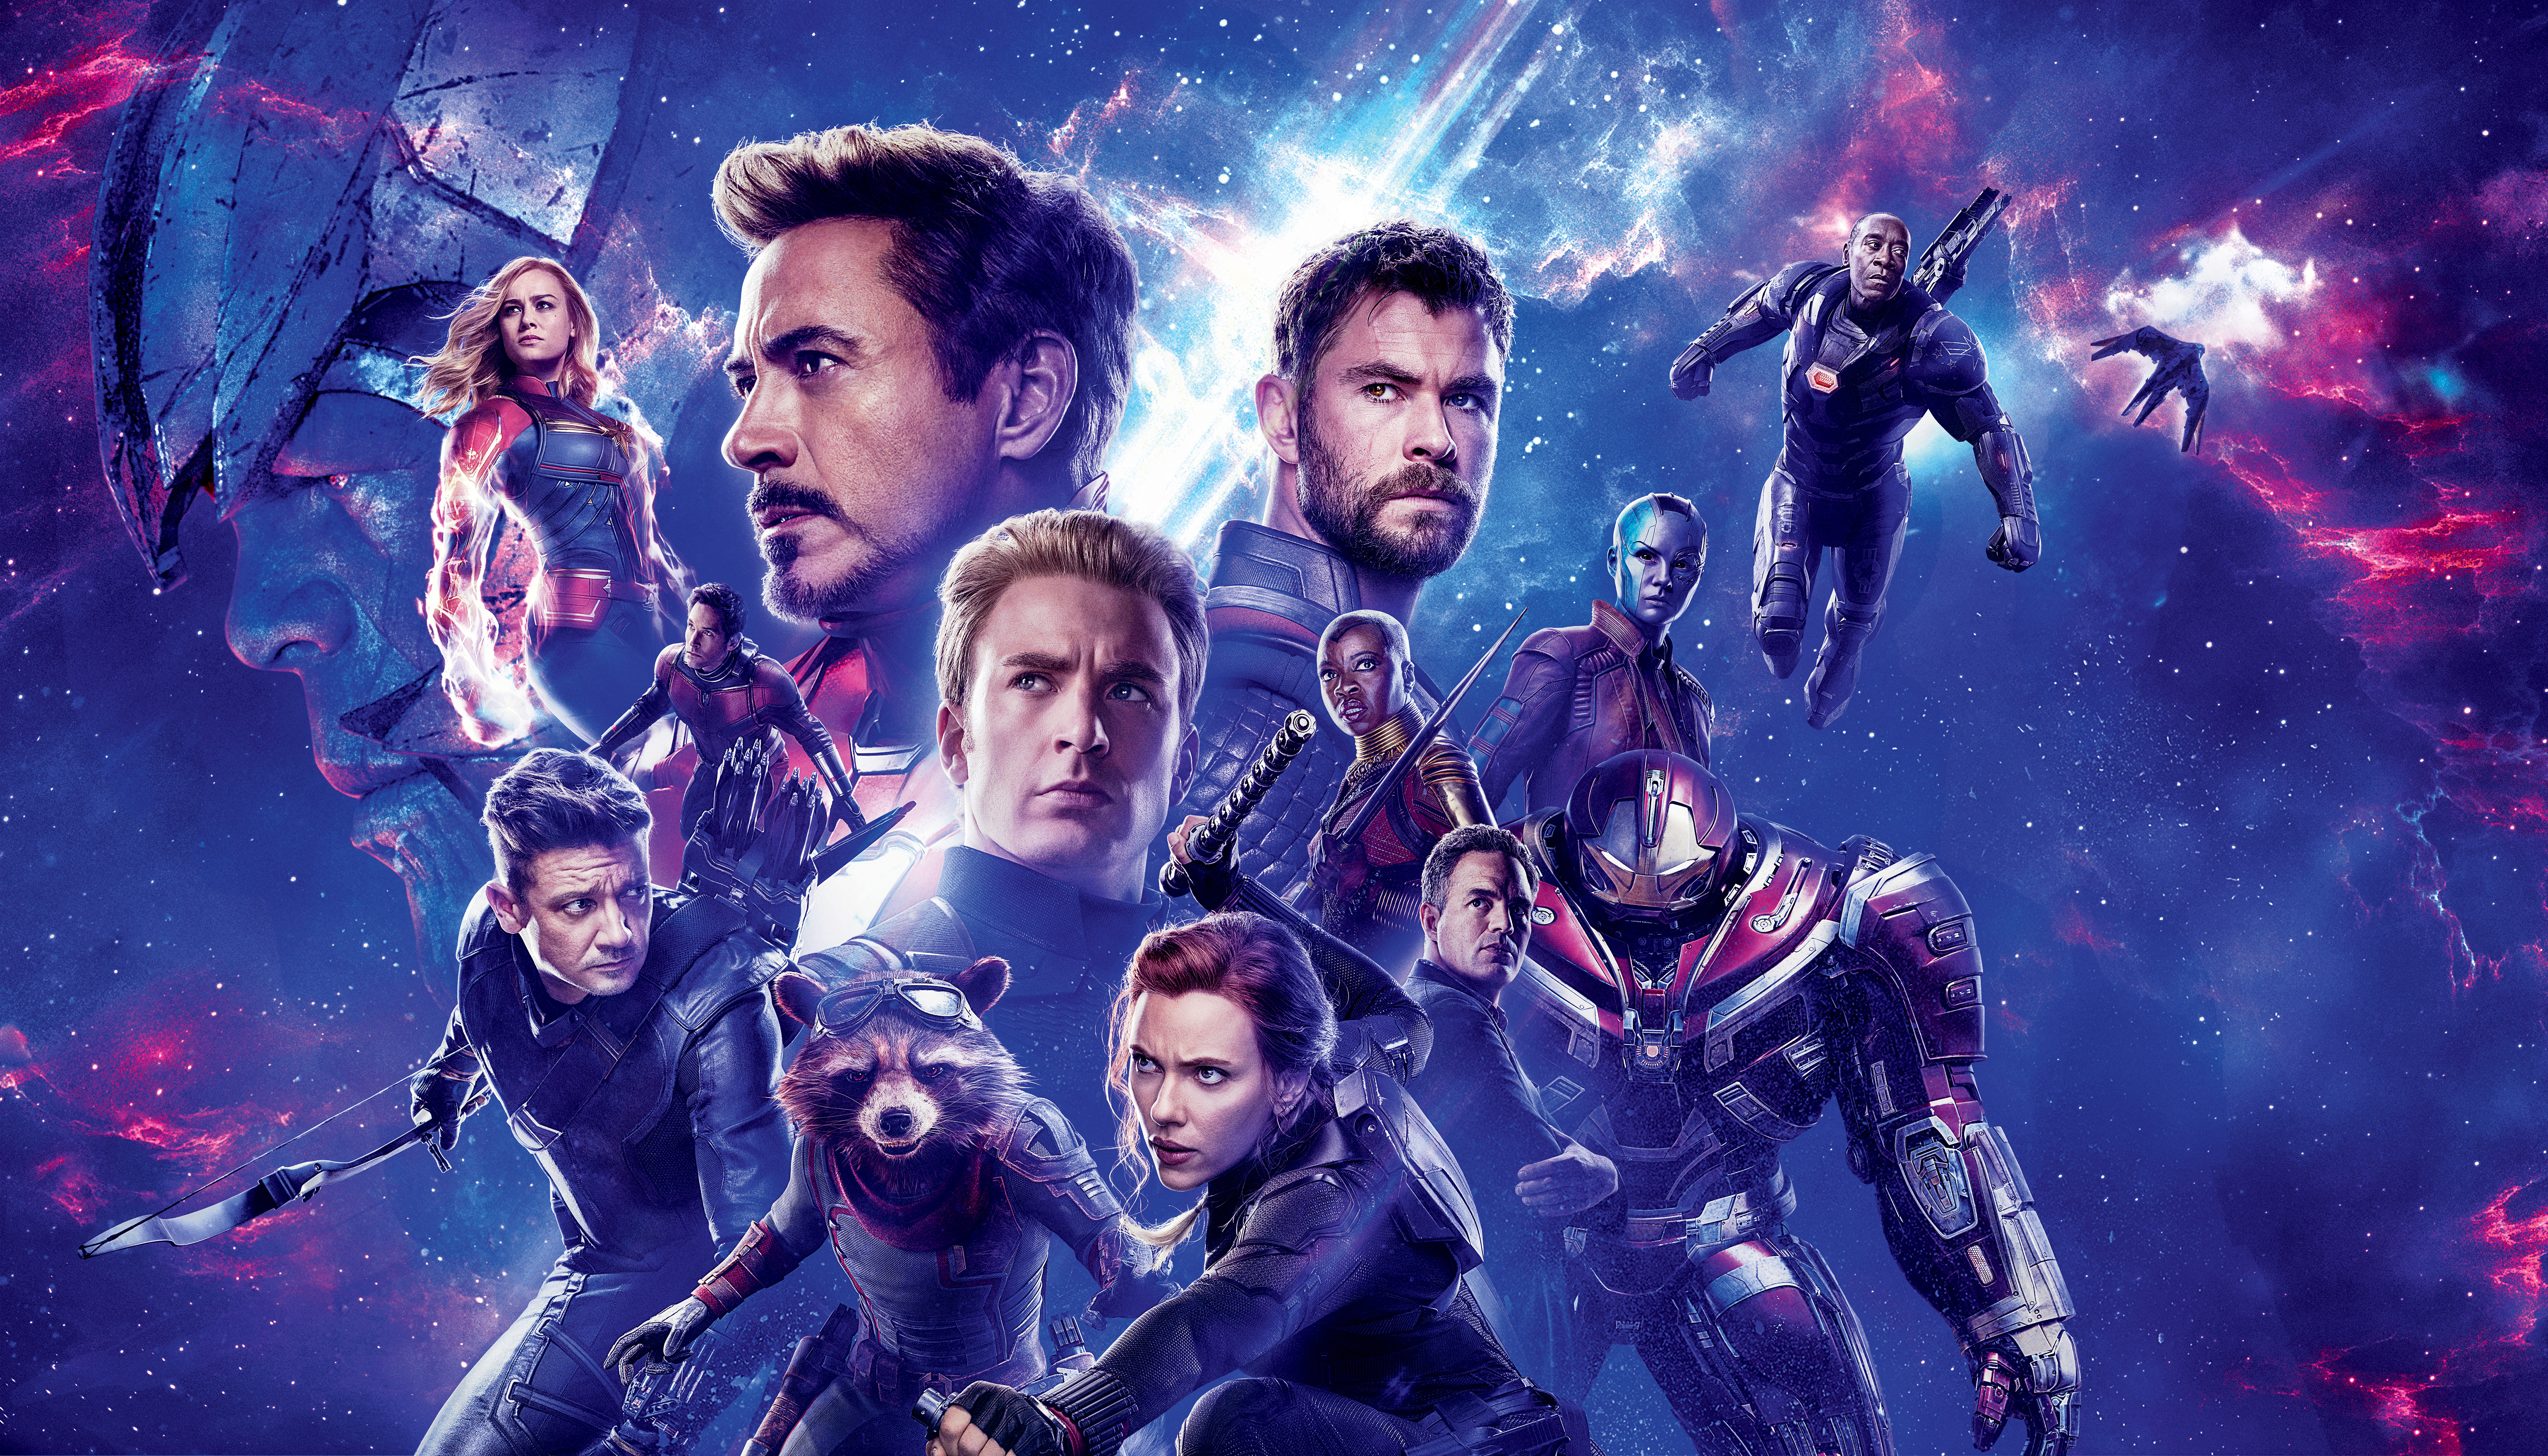 Avengers Endgame 7000×4000 2019 4k 8k - Avengers Endgame Wallpaper 8k - HD Wallpaper 